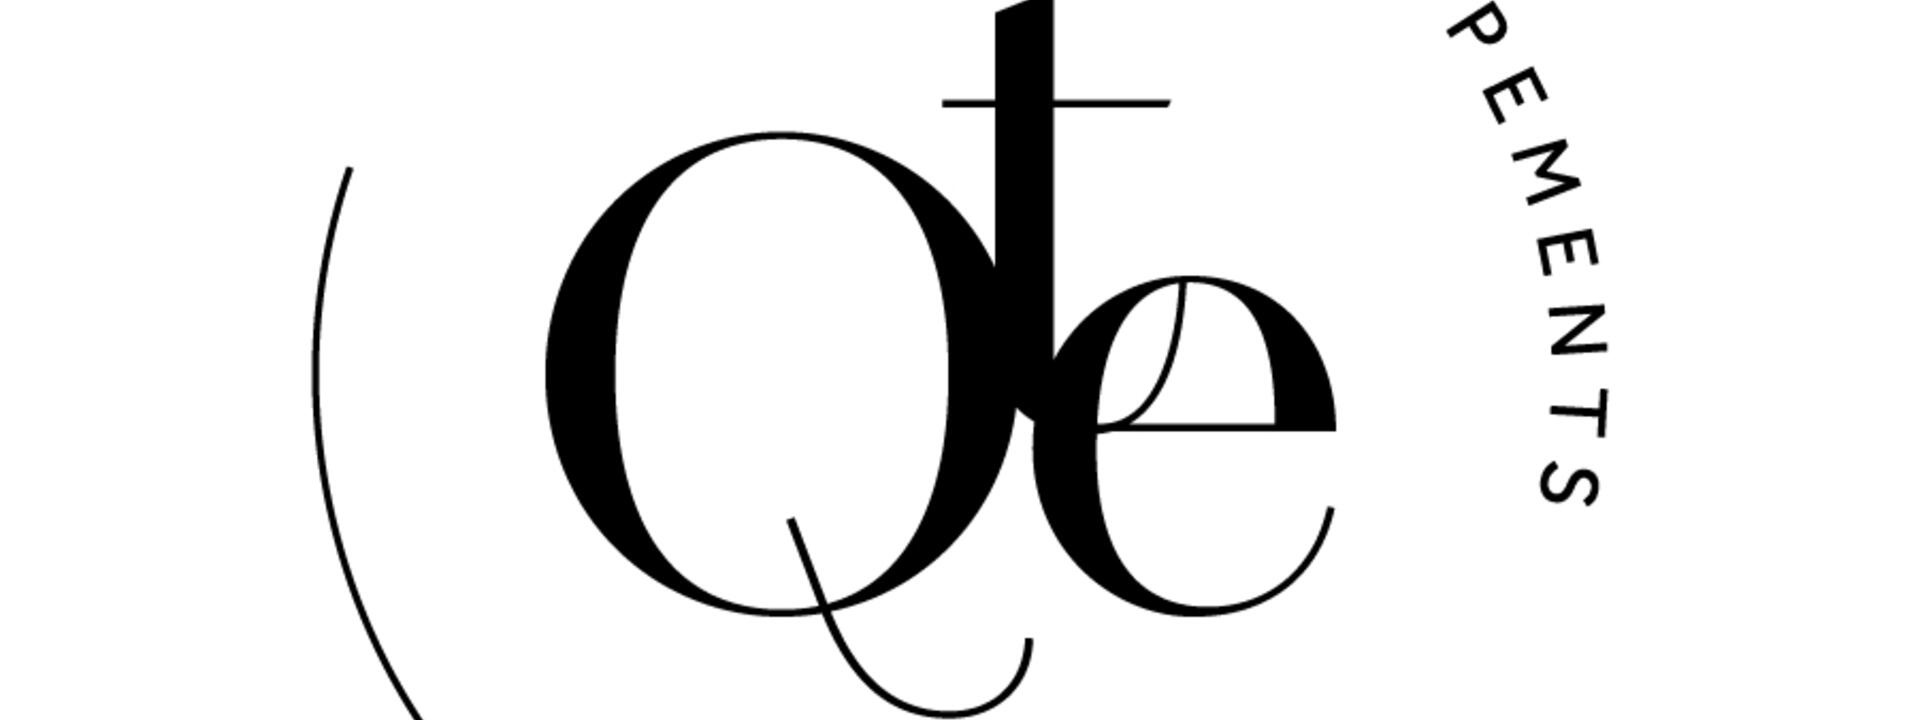 QTE-Circle-Black.jpg